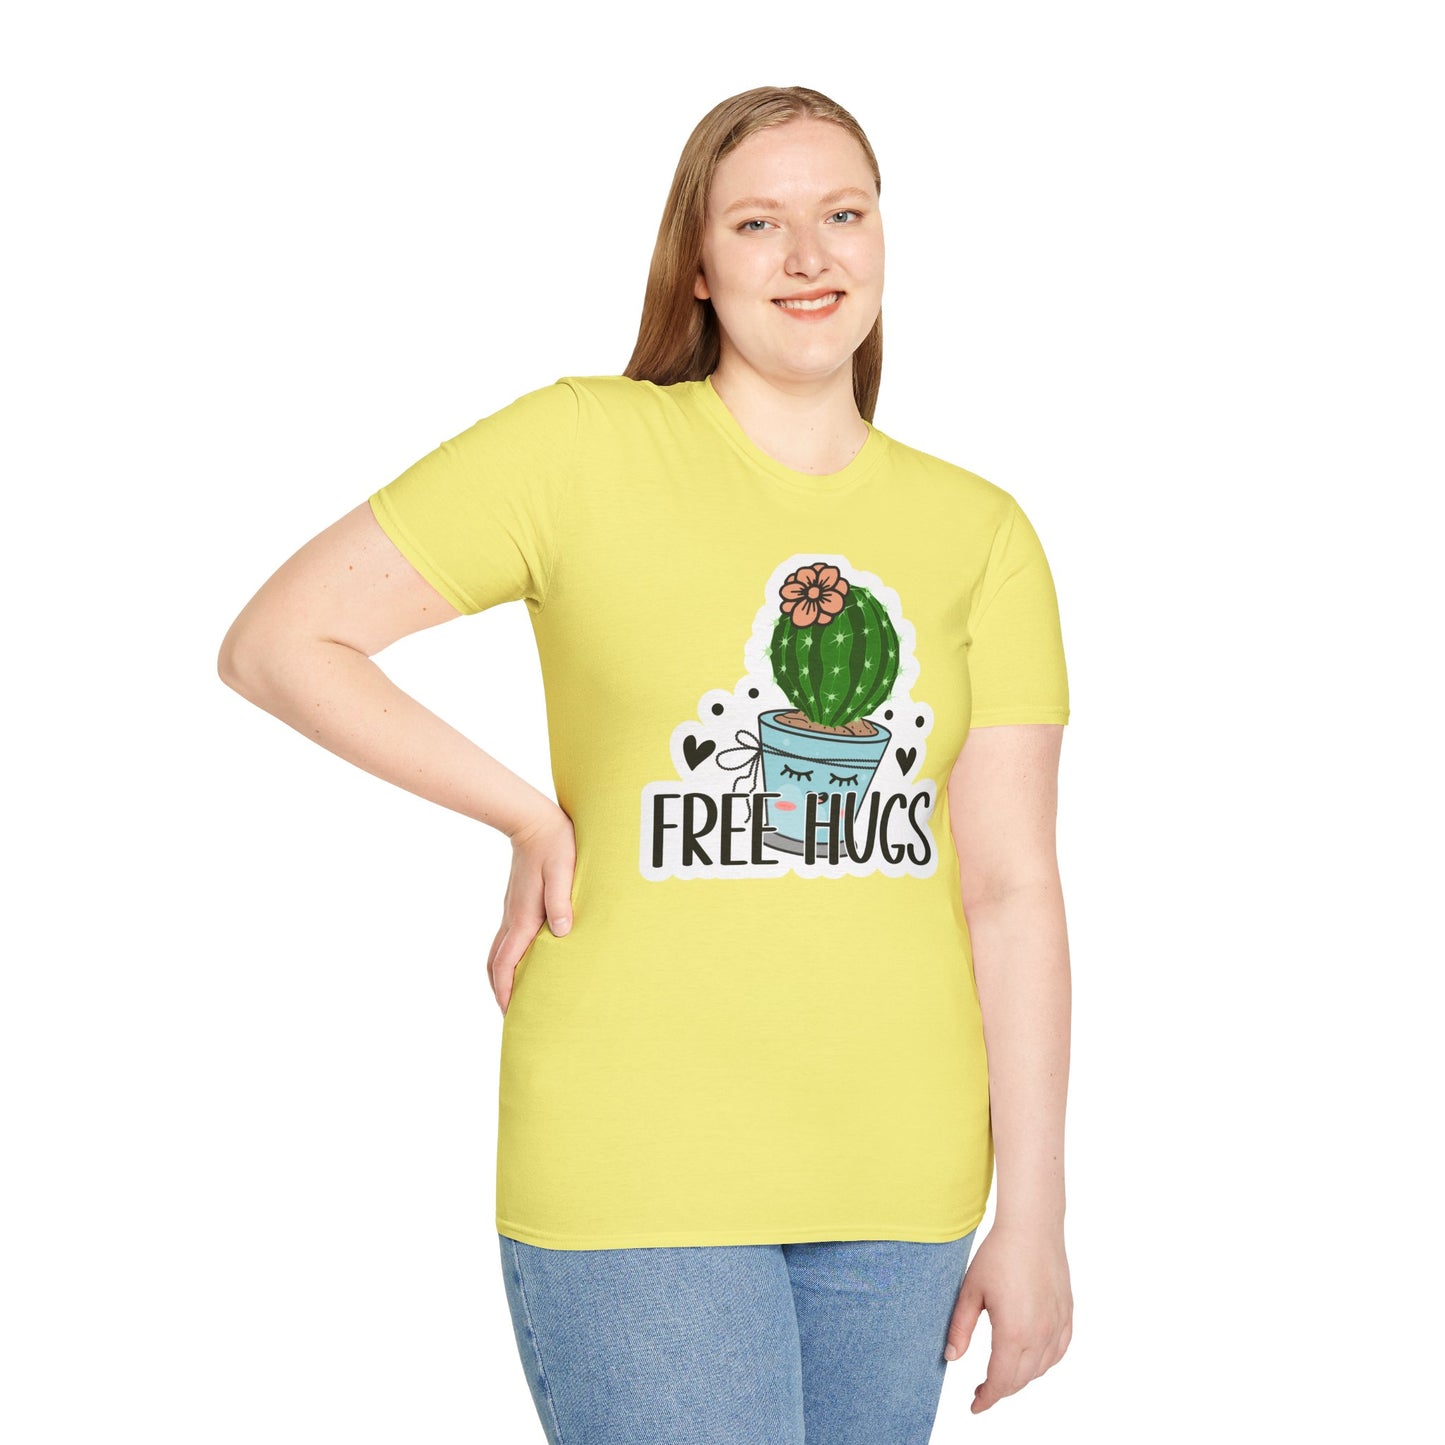 Unisex Softstyle T-Shirt Free Hugs, Cactus Tee Shirt